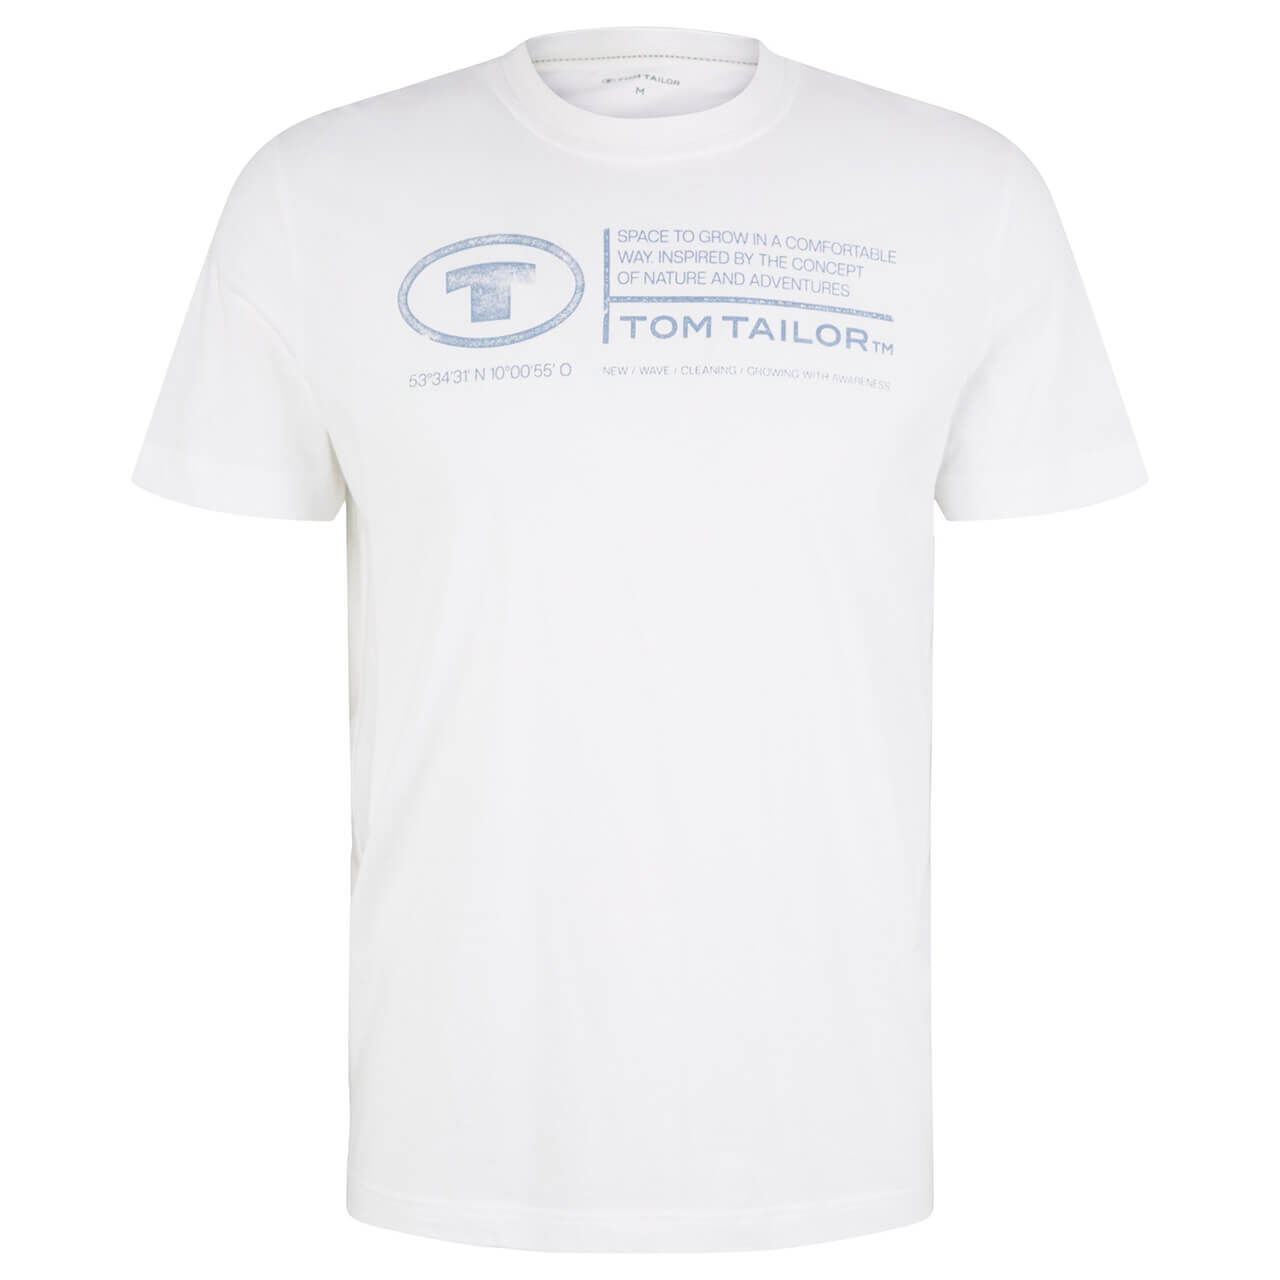 Tom Tailor Herren T-Shirt pure white logo wording